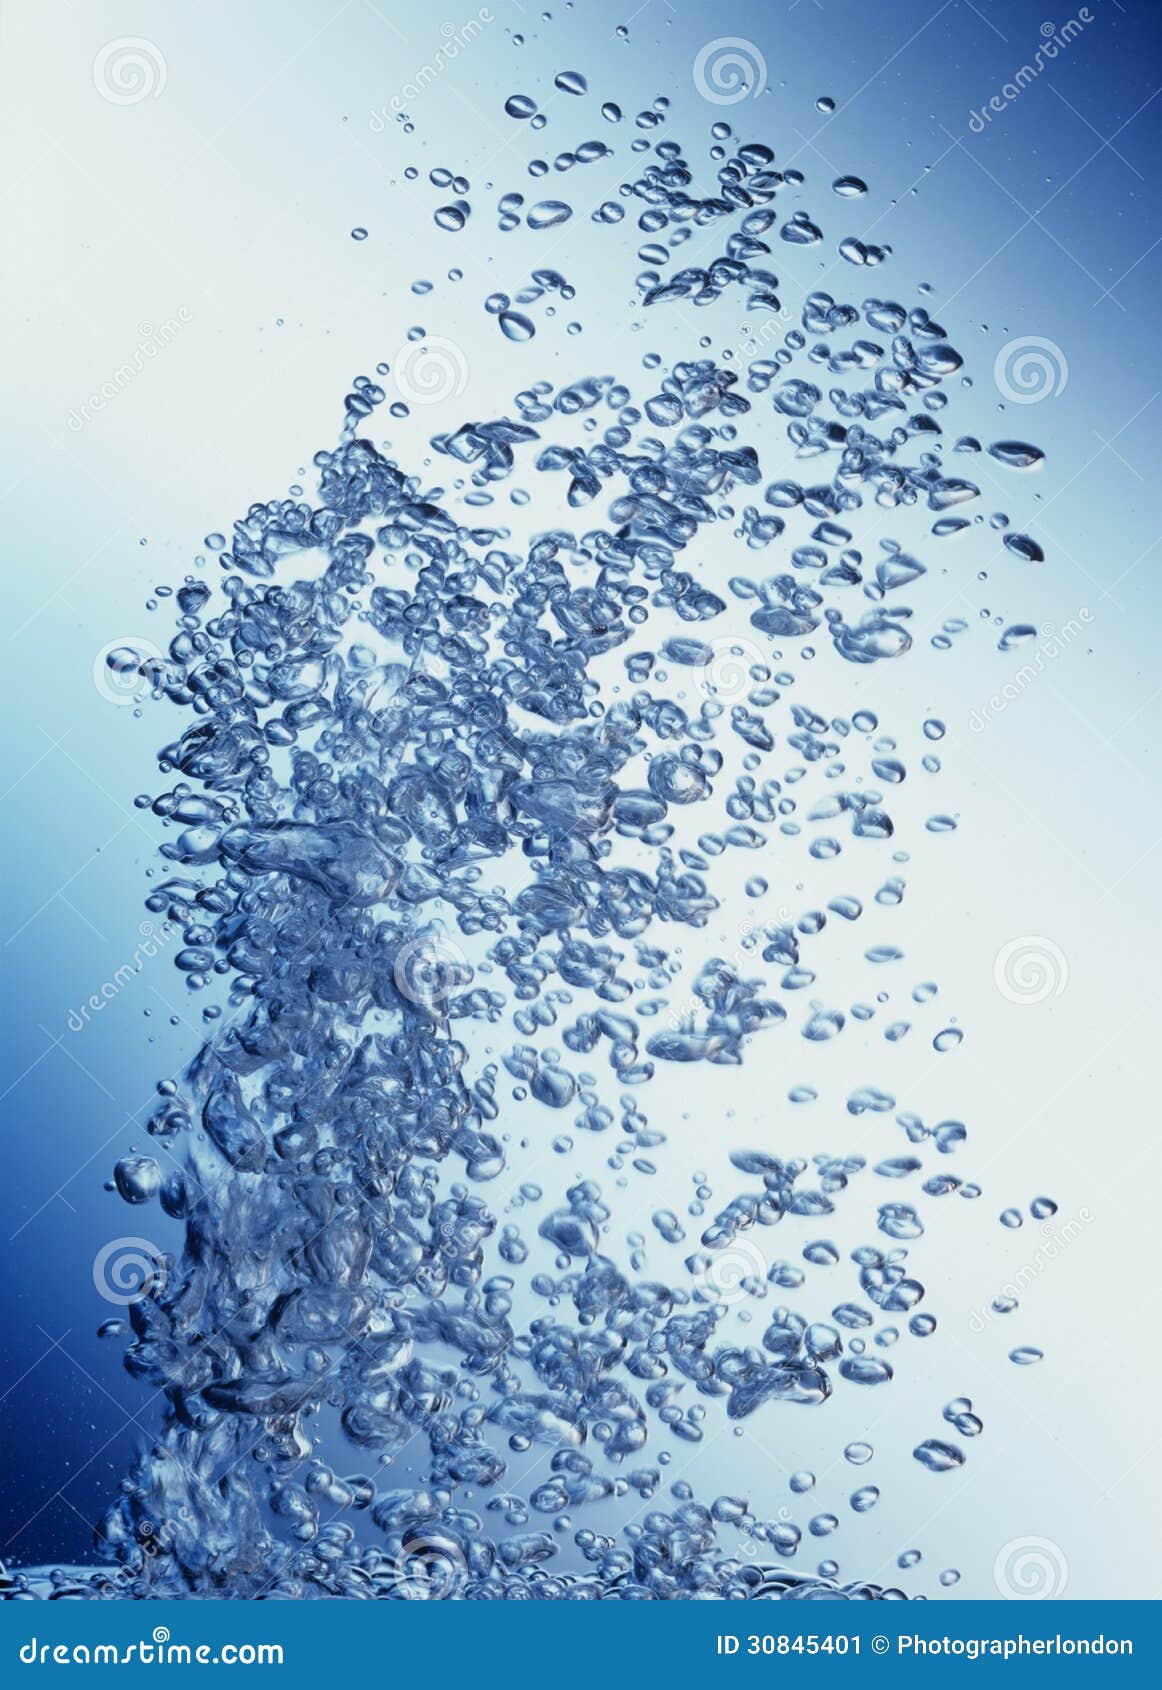 air bubbling upward through water